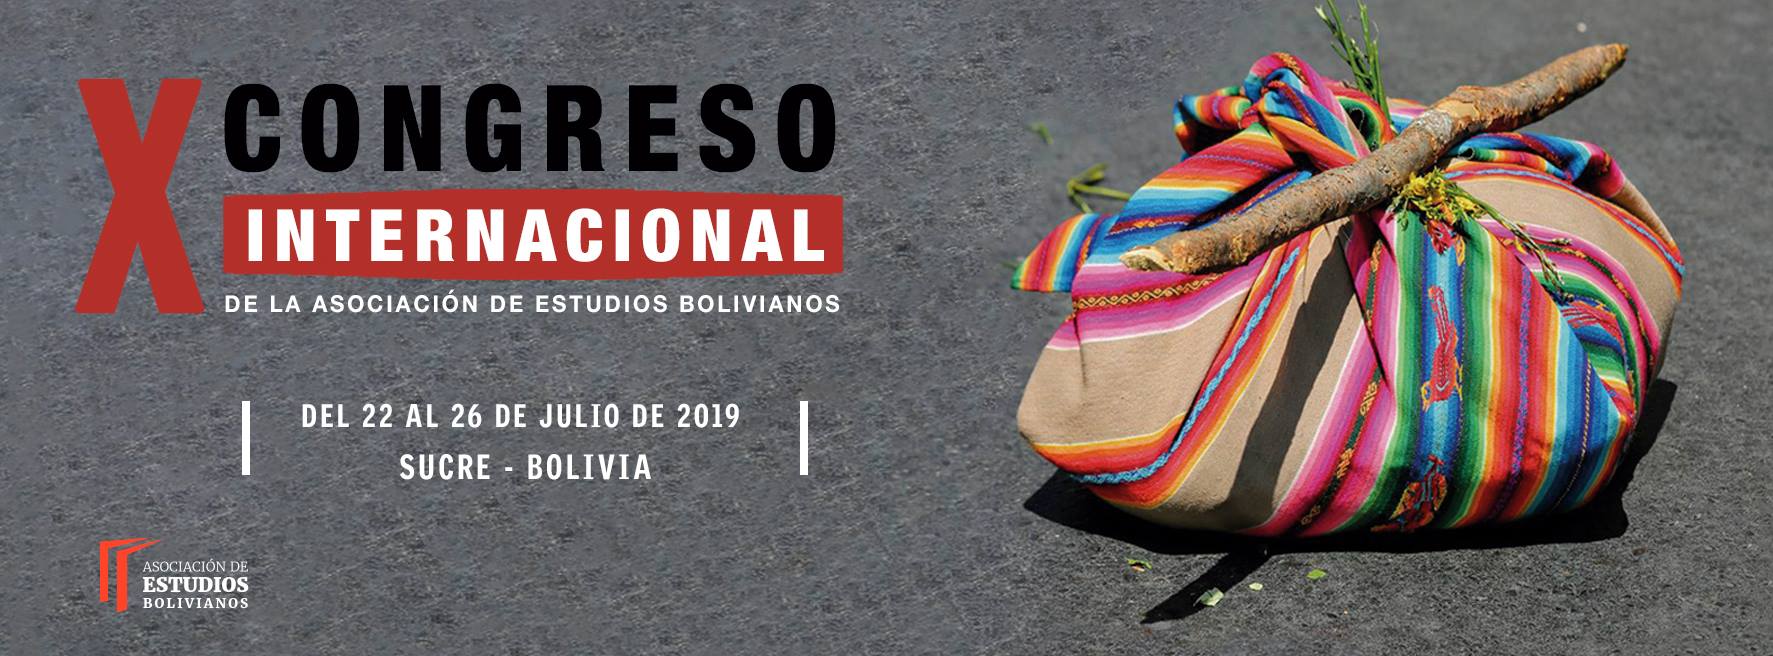  X congreso internacional de la Asociación de Estudios Bolivianos